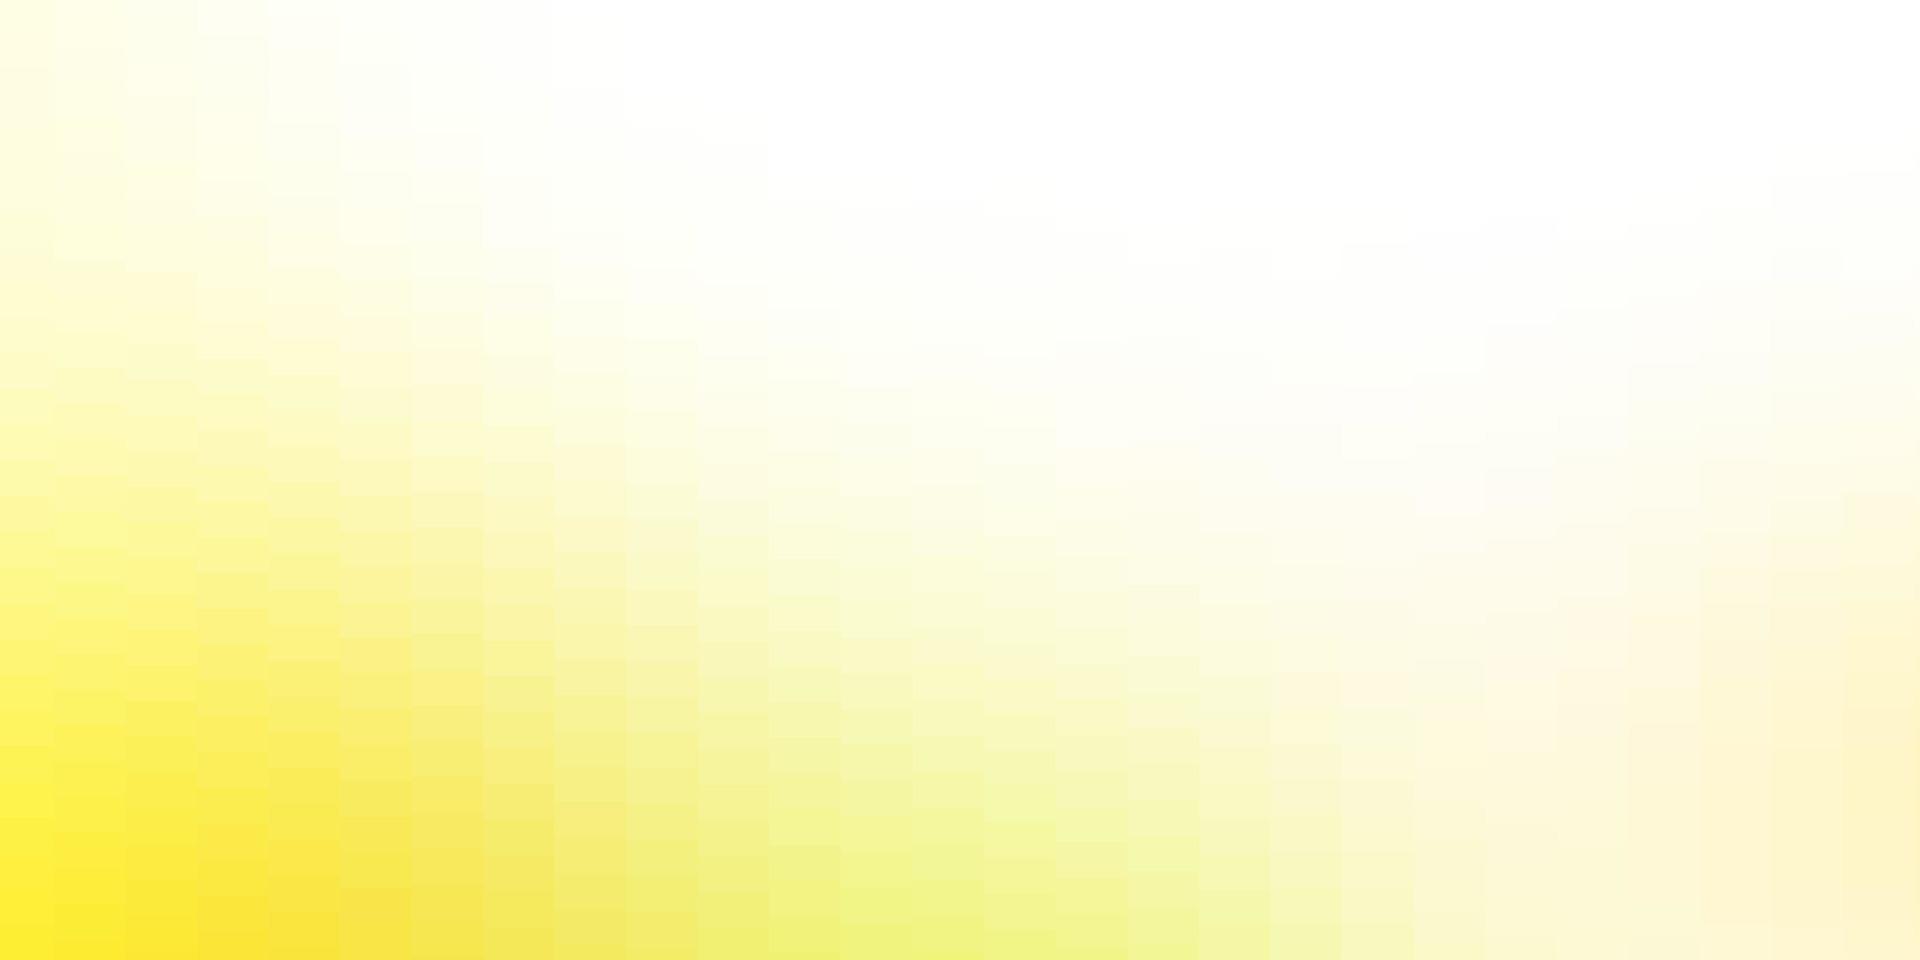 sfondo vettoriale verde chiaro, giallo con rettangoli.